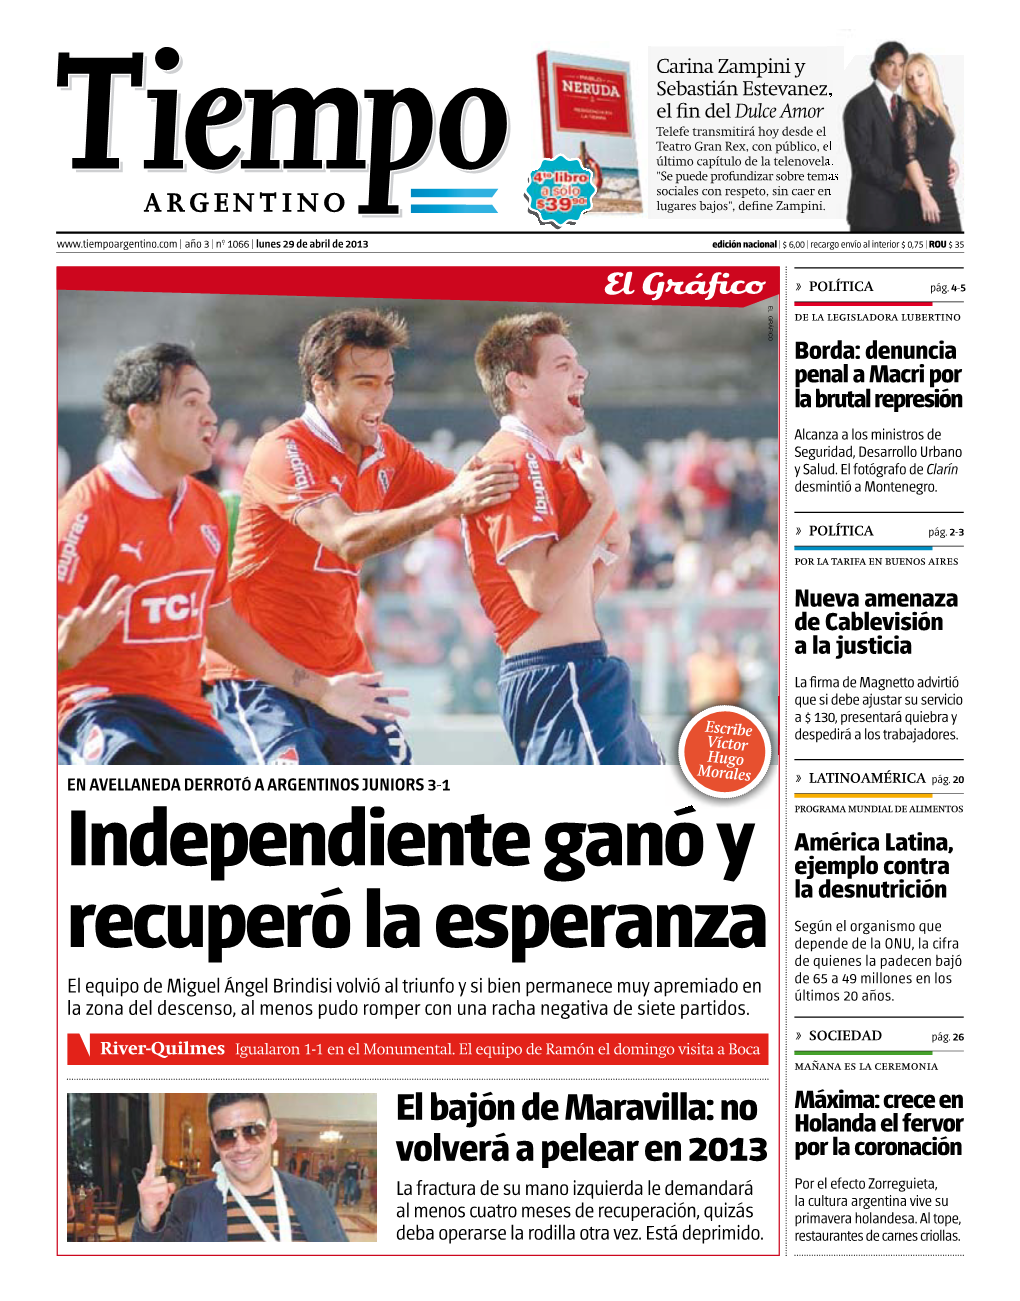 Independiente Ganó Y Recuperó La Esperanza